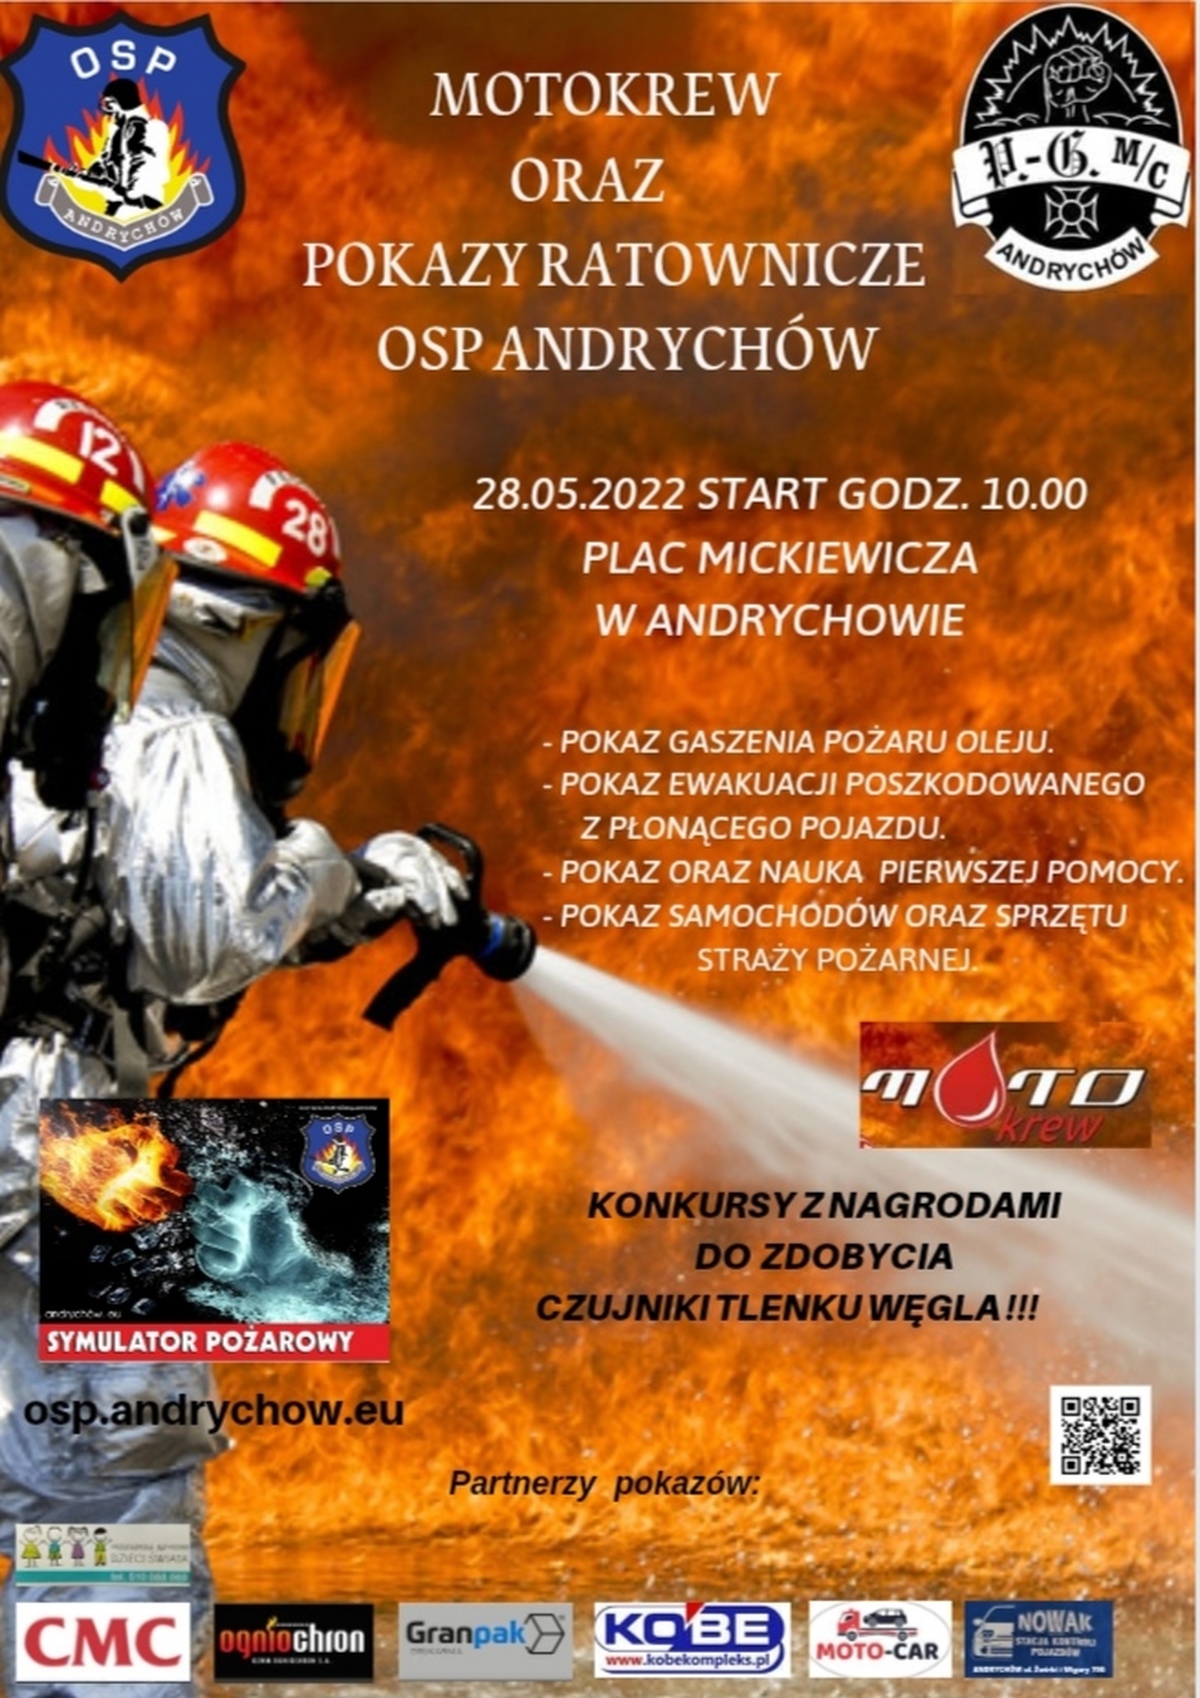 W sobotę akcja w Andrychowie: Moto-Krew Motocykliści Dzieciom